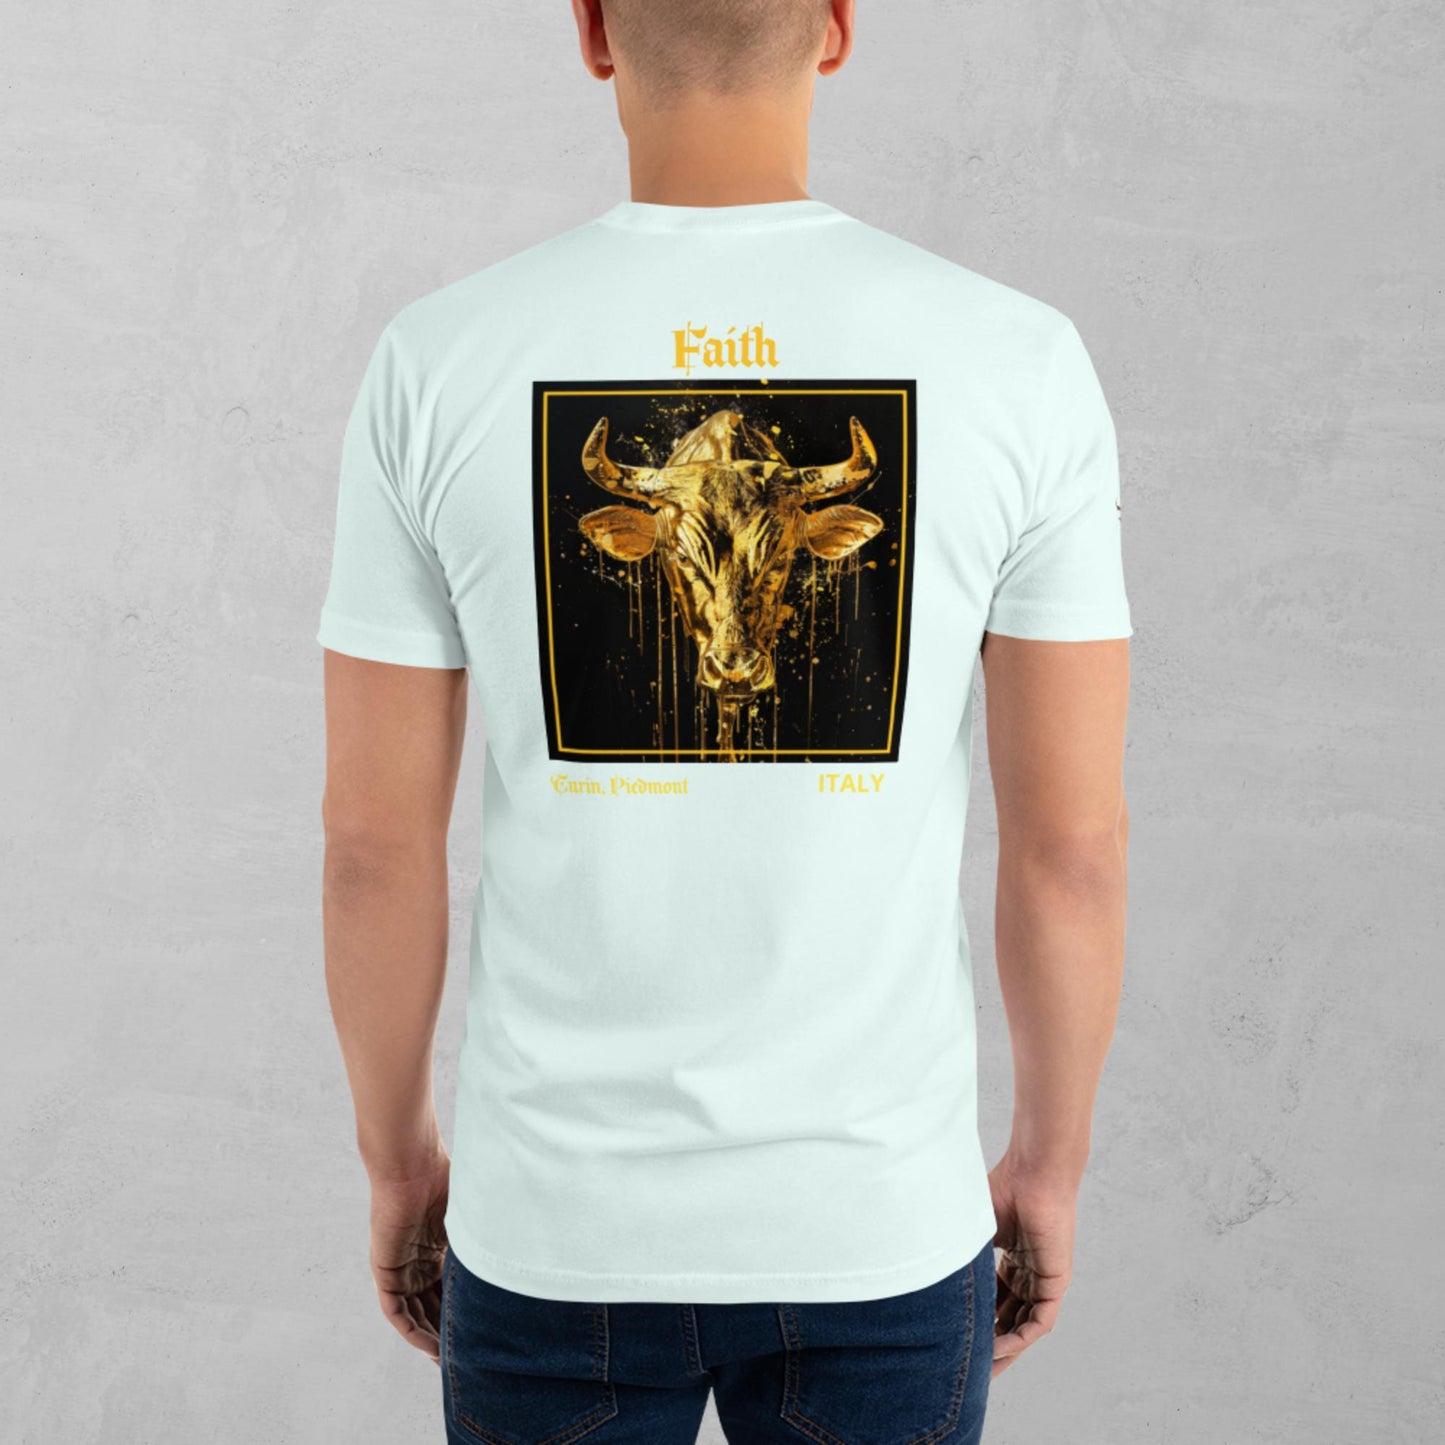 J.A Gold Bull Short Sleeve T-shirt